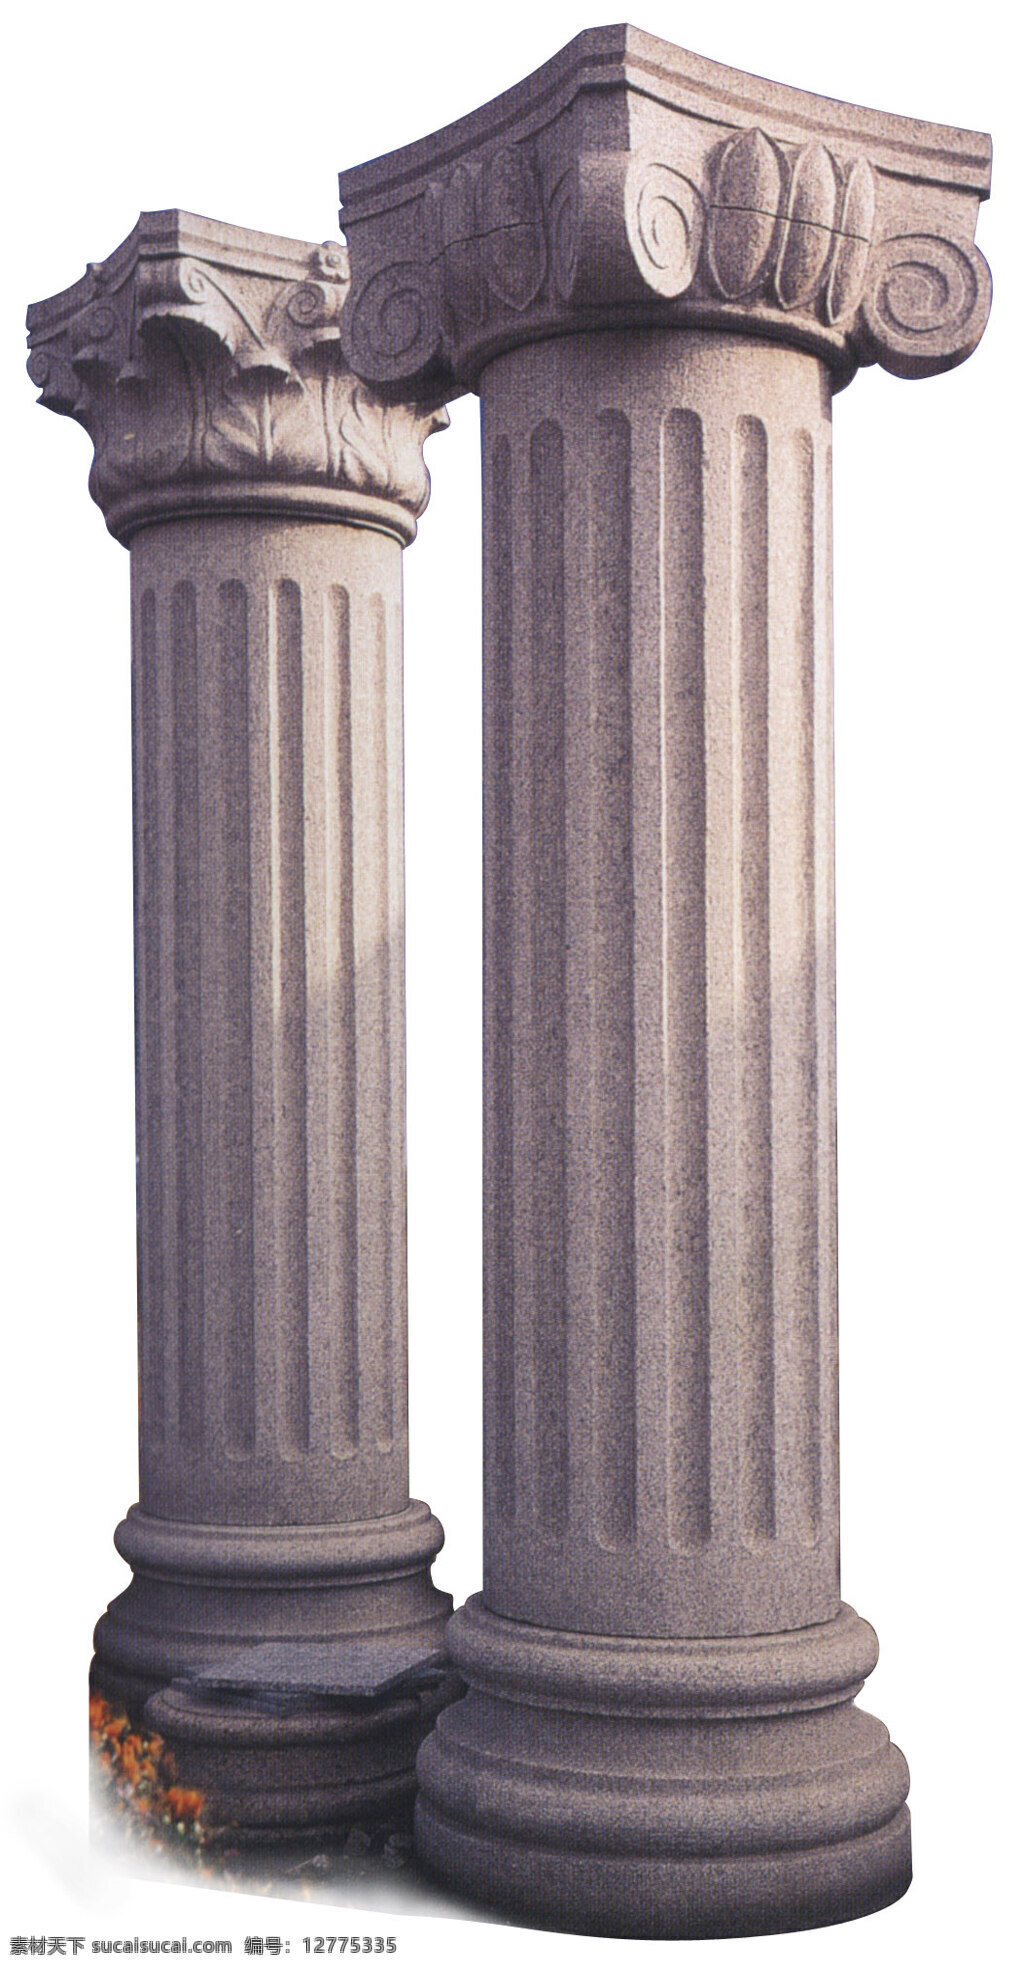 罗马柱图片 惠安石雕 石材柱 罗马柱 雕刻柱帽 石材底座 圆弧板 惠安石雕系列 建筑园林 雕塑